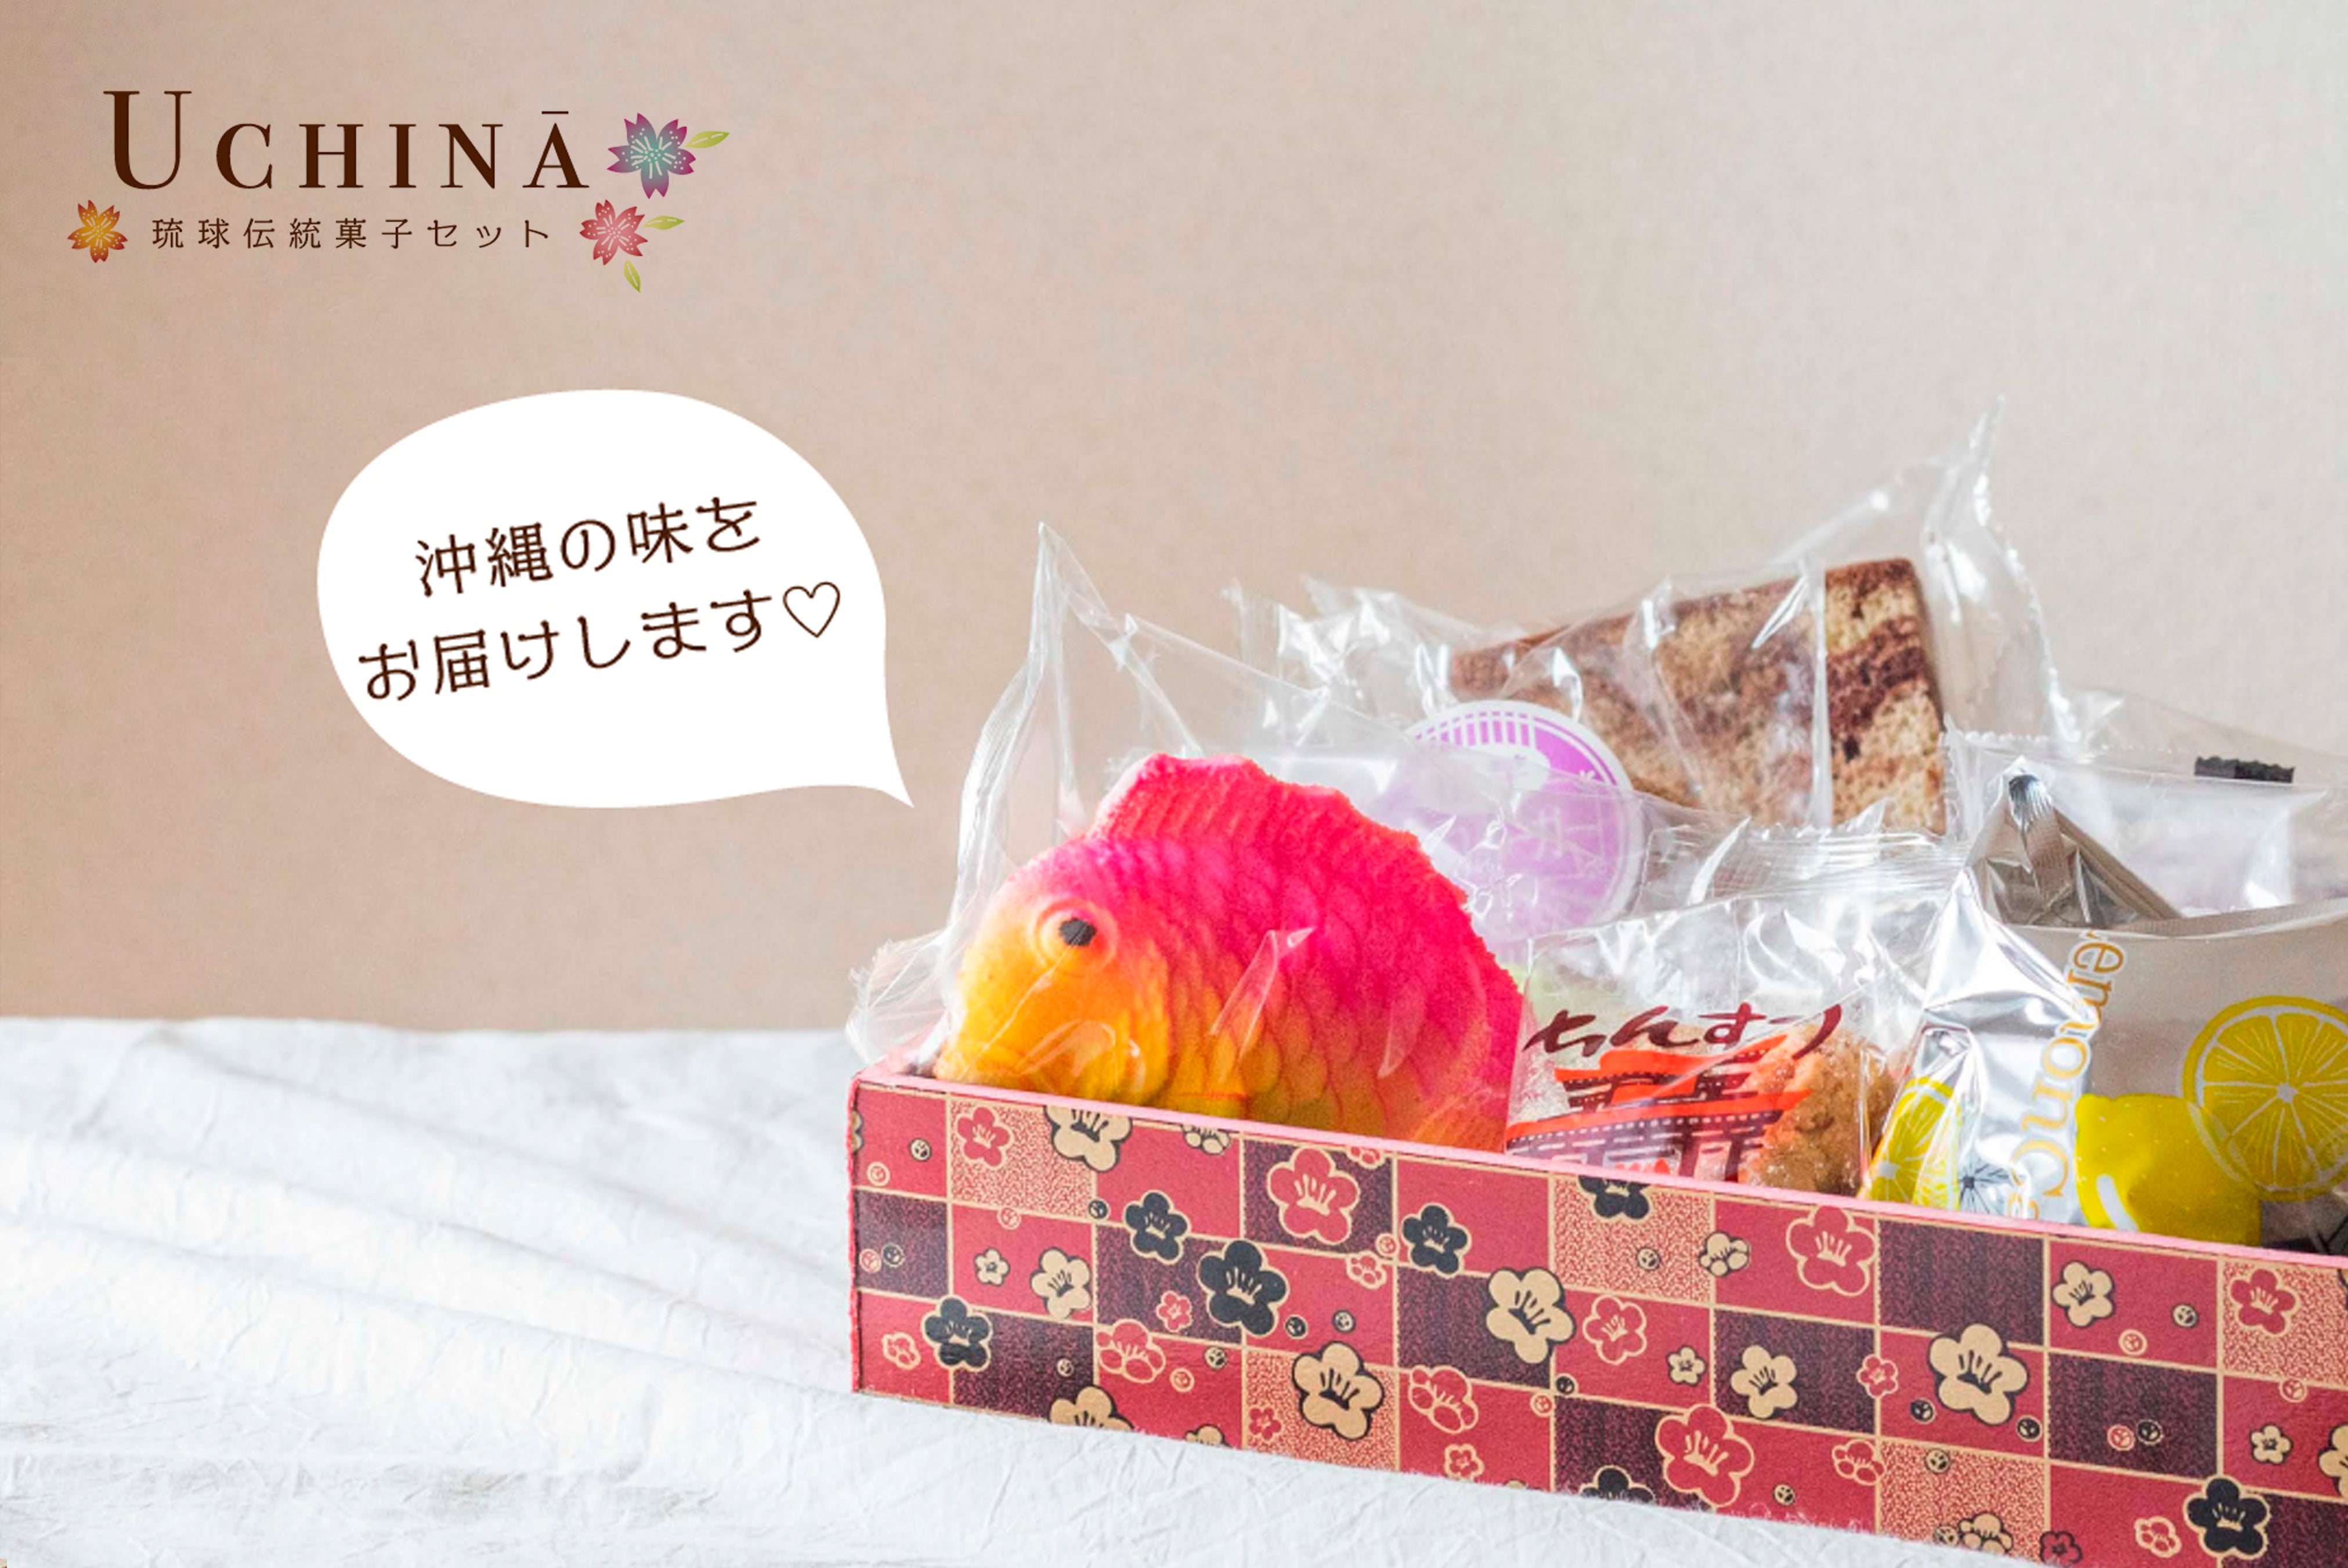 沖縄の伝統菓子『UCHINA』